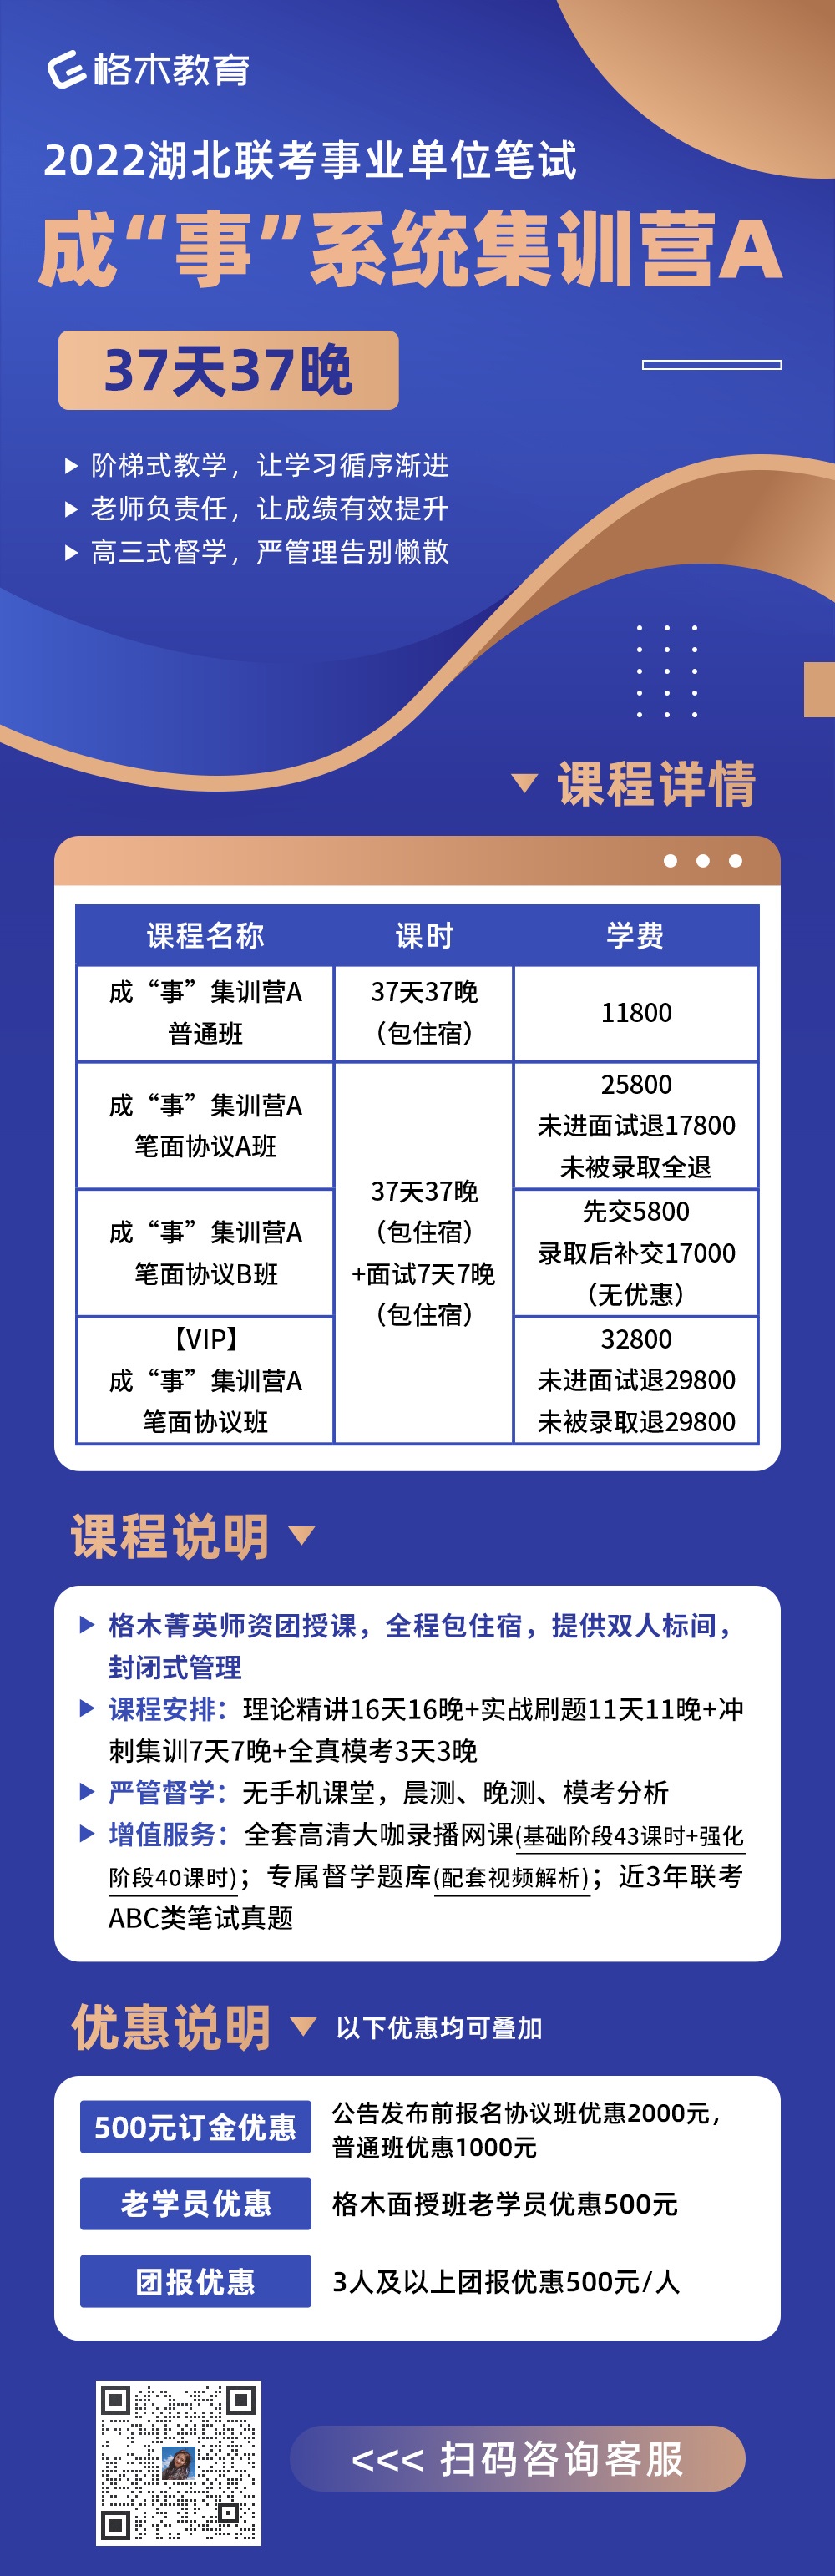 2022年武汉事业单位公开招聘3006人